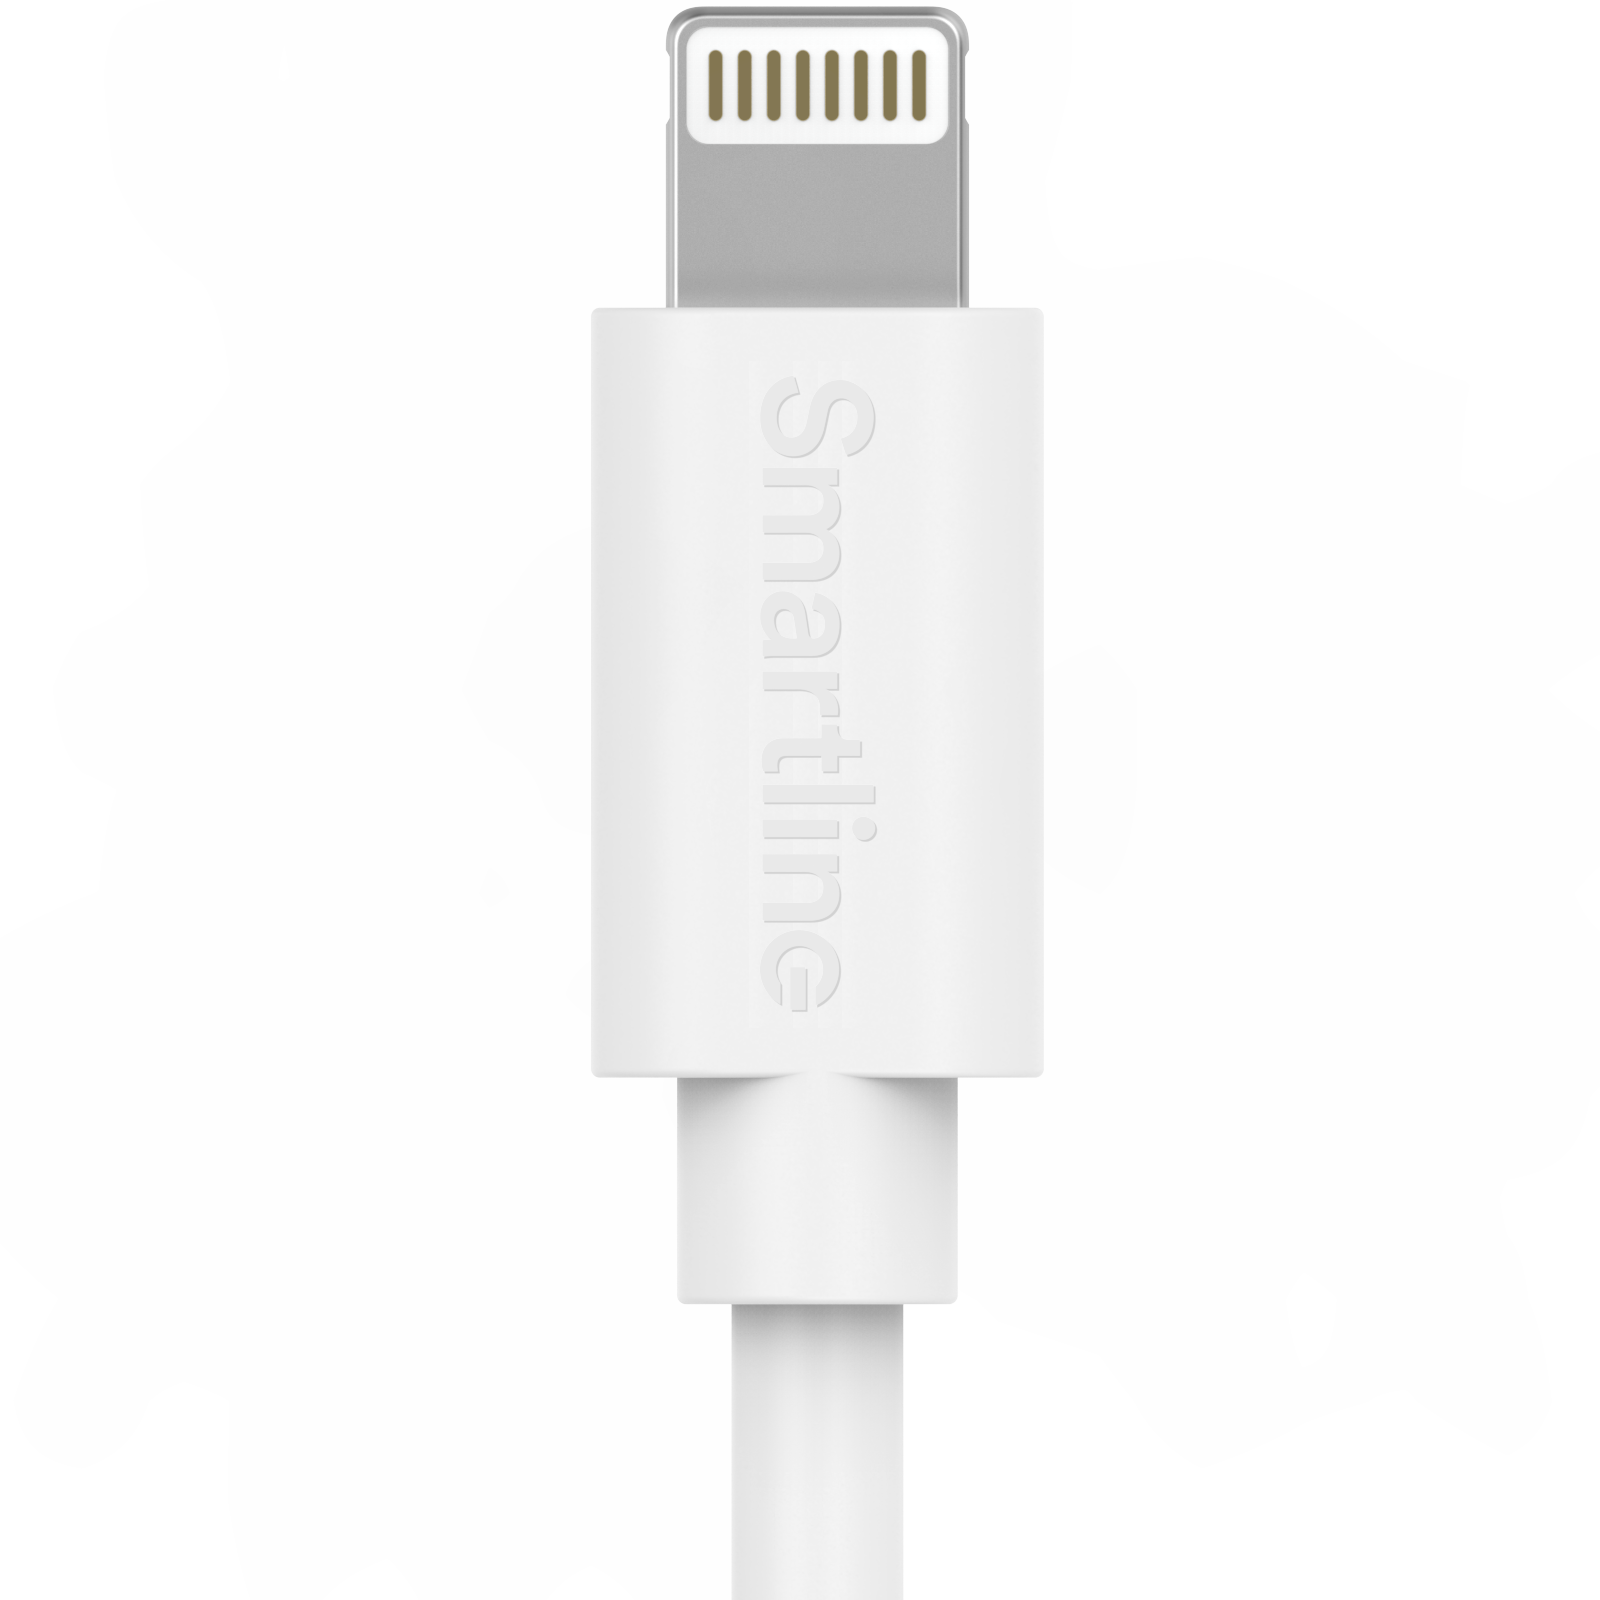 Chargeur complet pour iPhone 8 - Câble de 2m et chargeur mural - Smartline